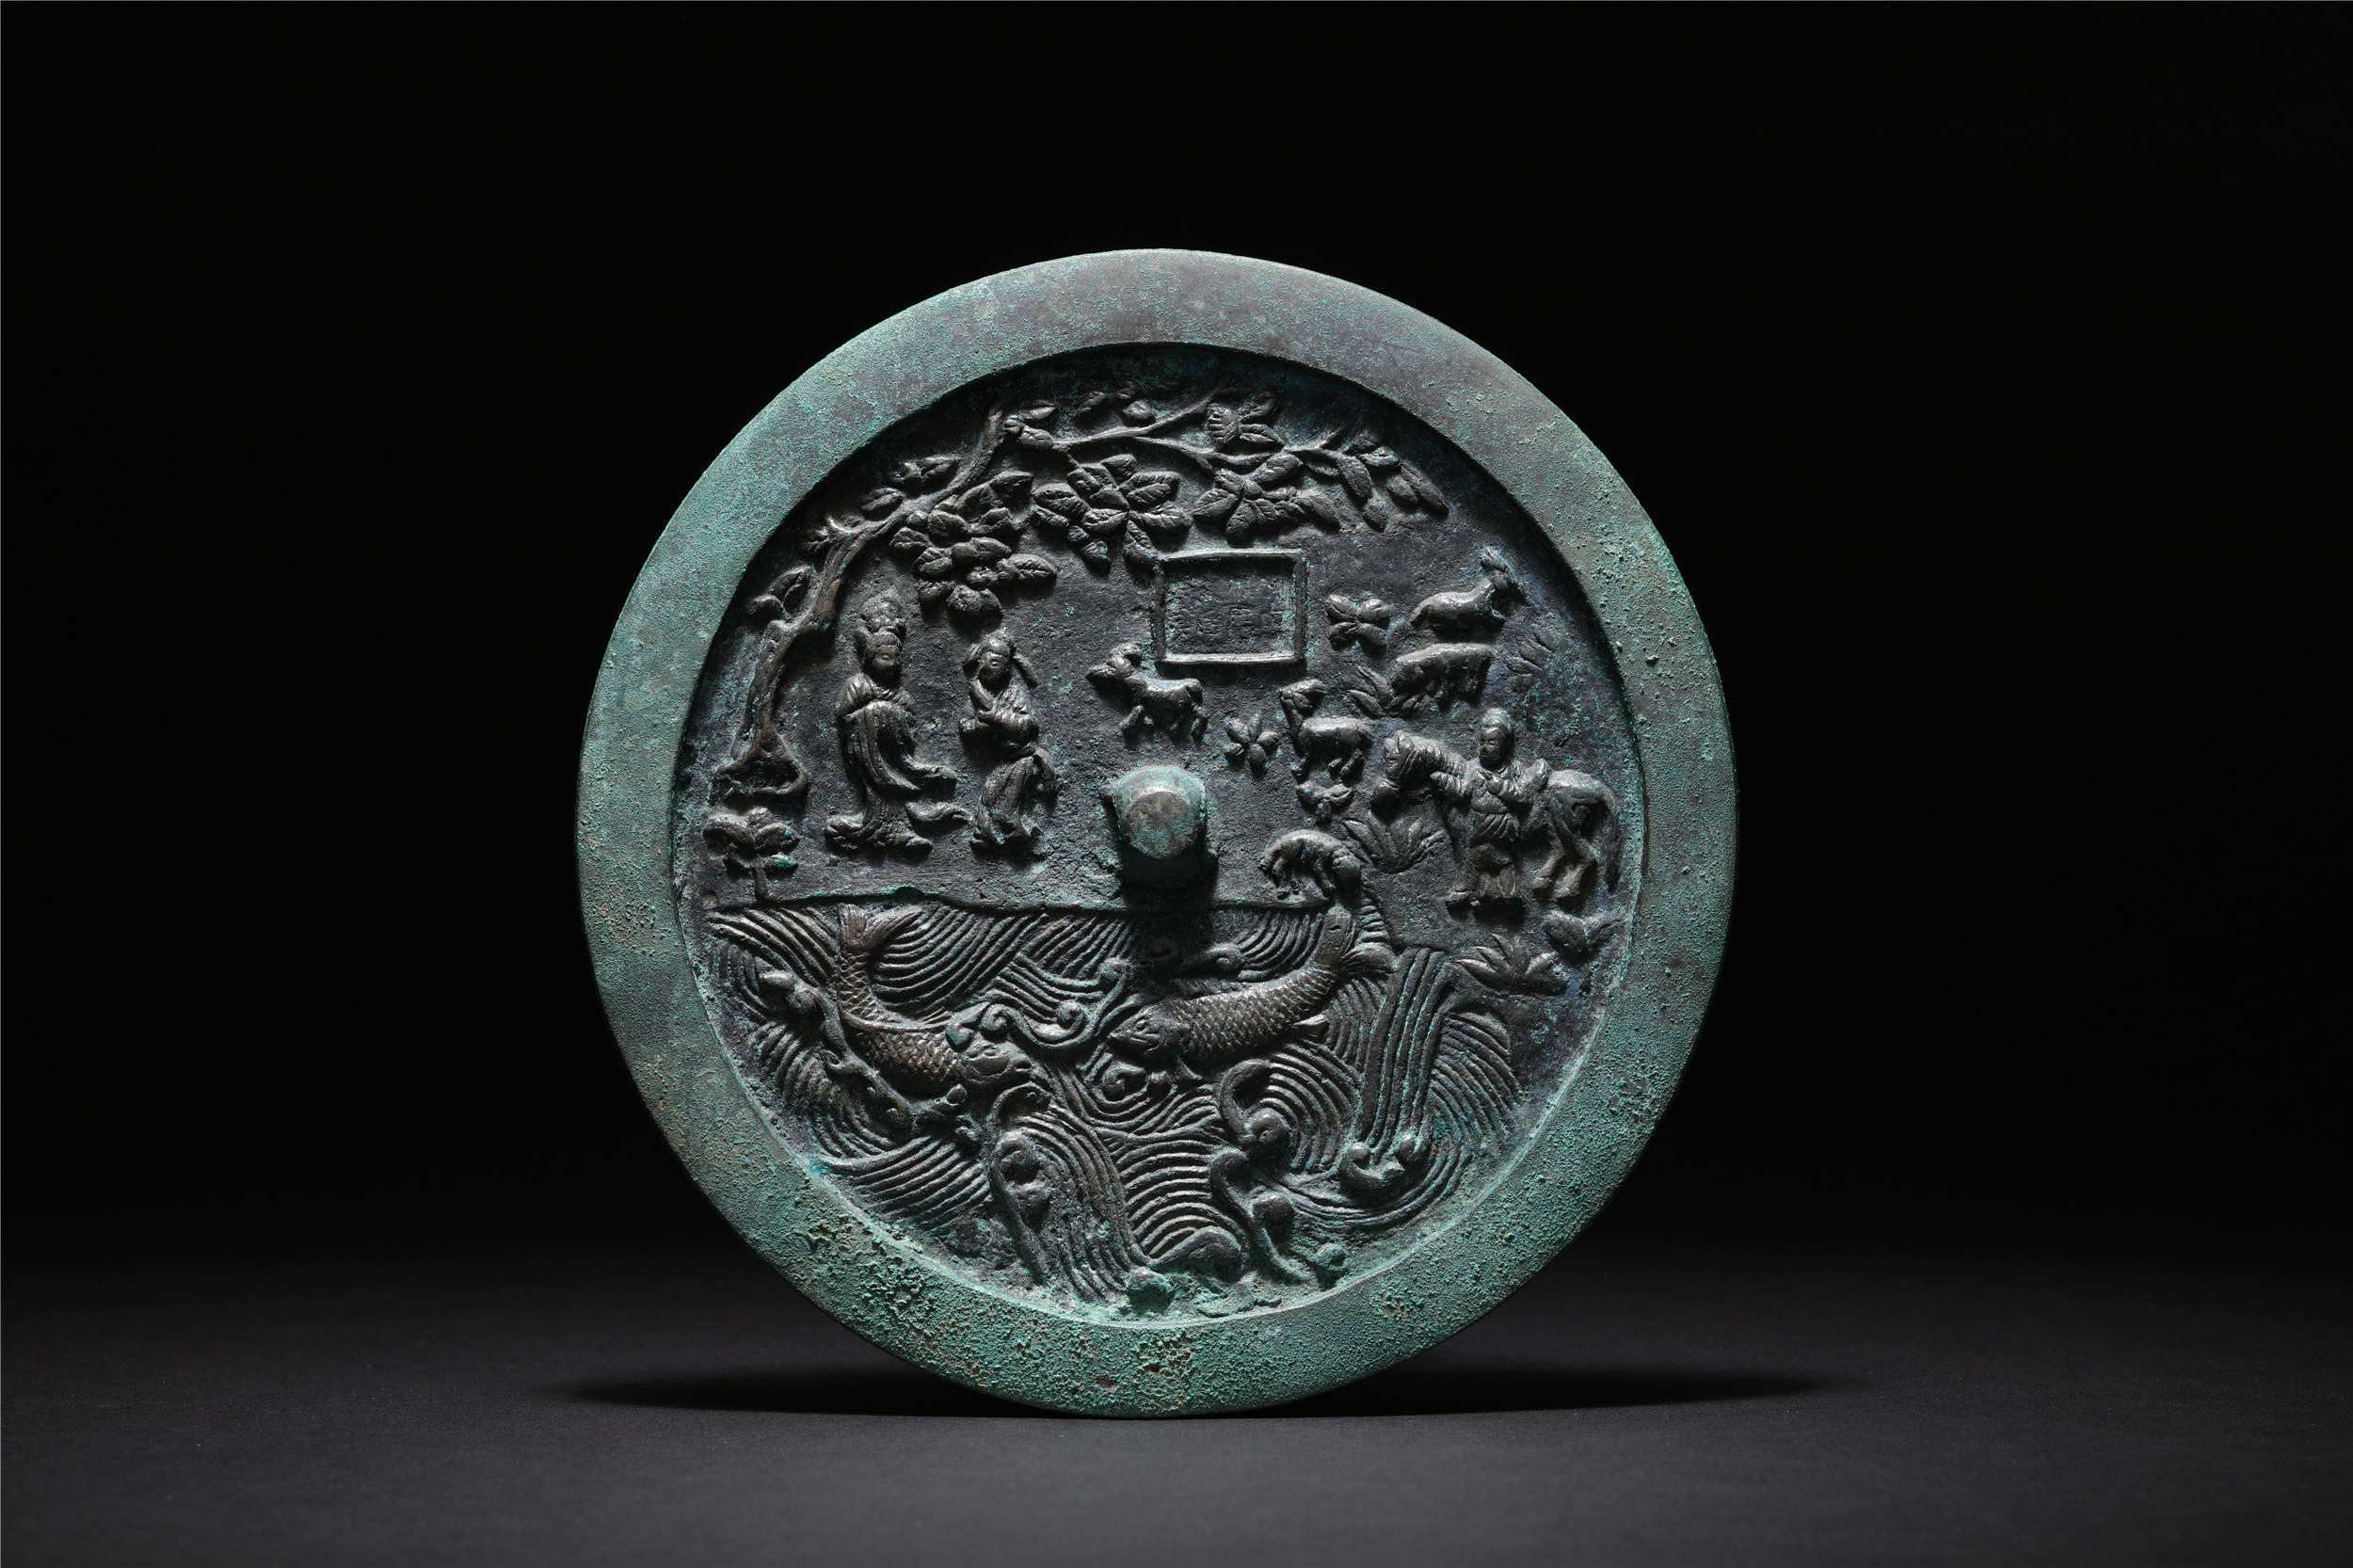 中国古代铜镜专场北京观古国际拍卖有限公司预展信息:2018年12月6日